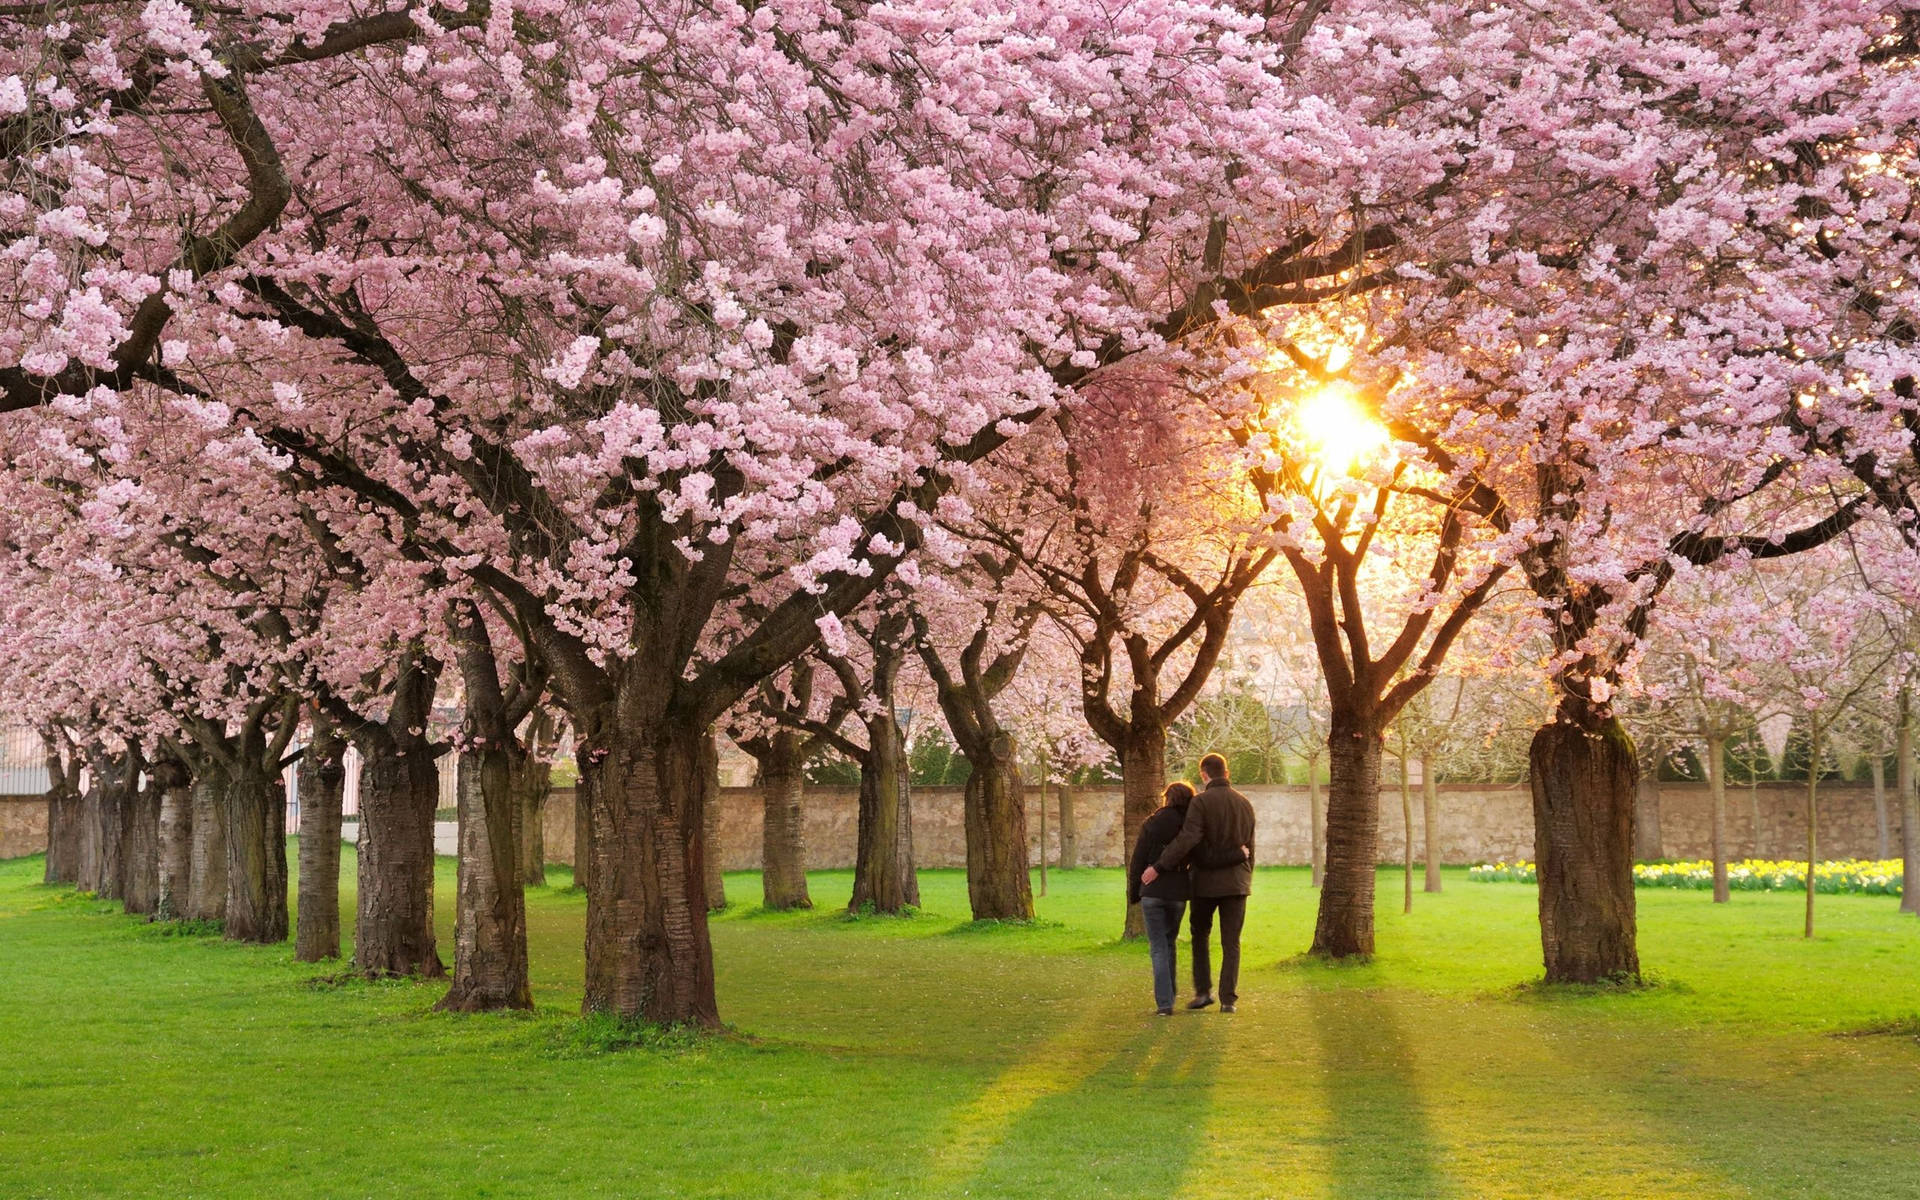 Einpaar Geht Durch Einen Park Mit Kirschblütenbäumen. Wallpaper